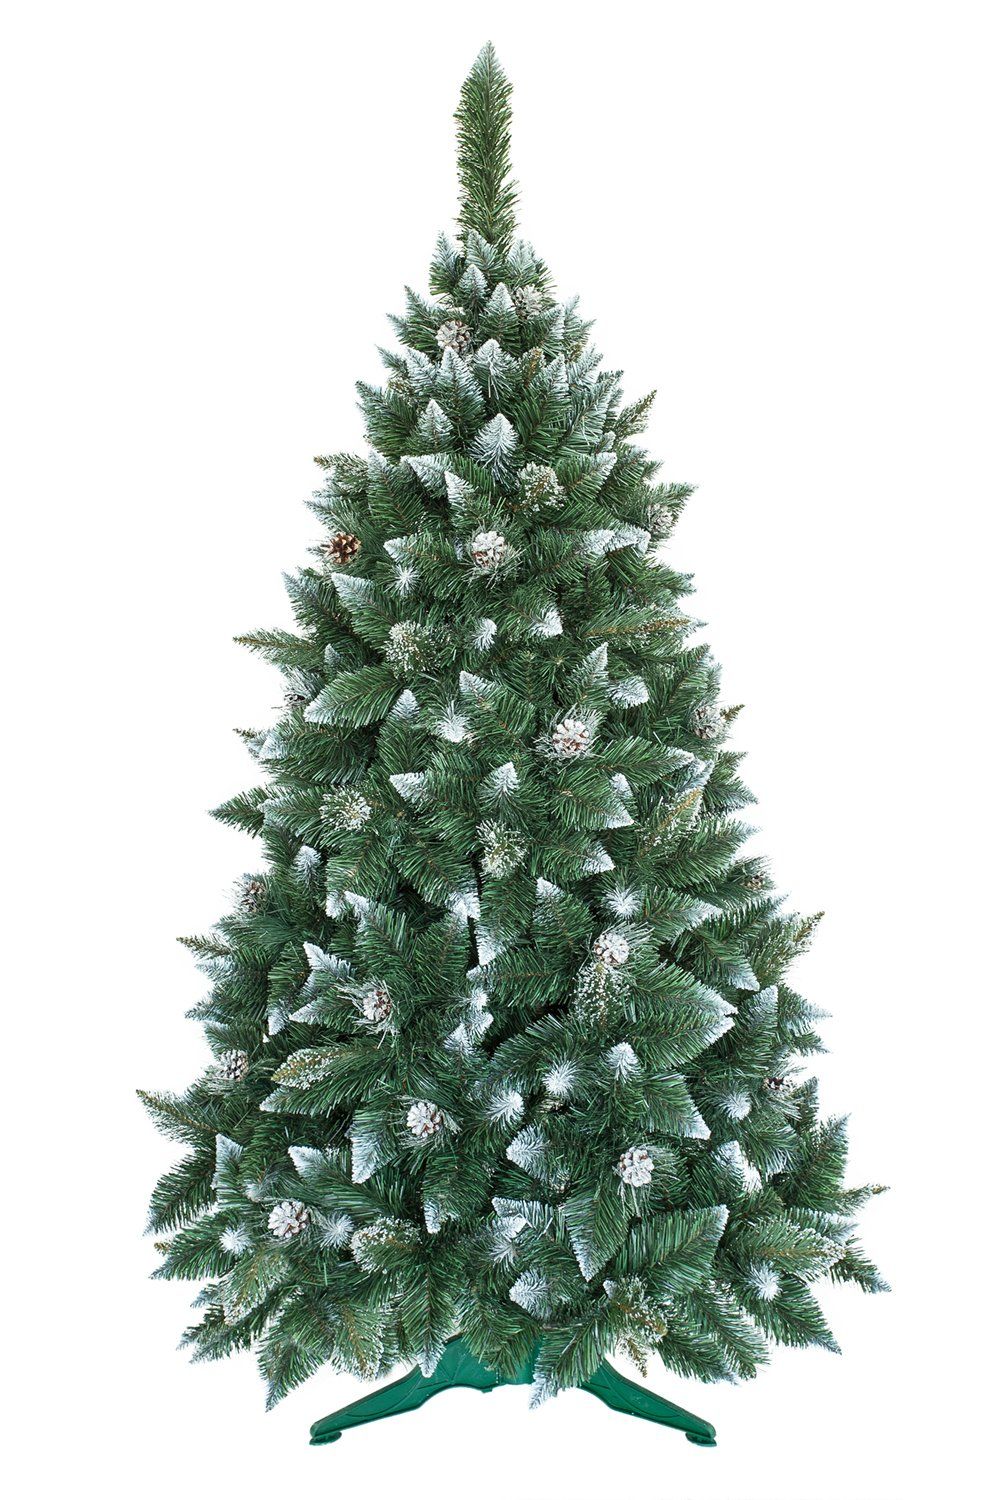 Umelý vianočný stromček Borovica Strieborná s kryštálmi ľadu 180cm